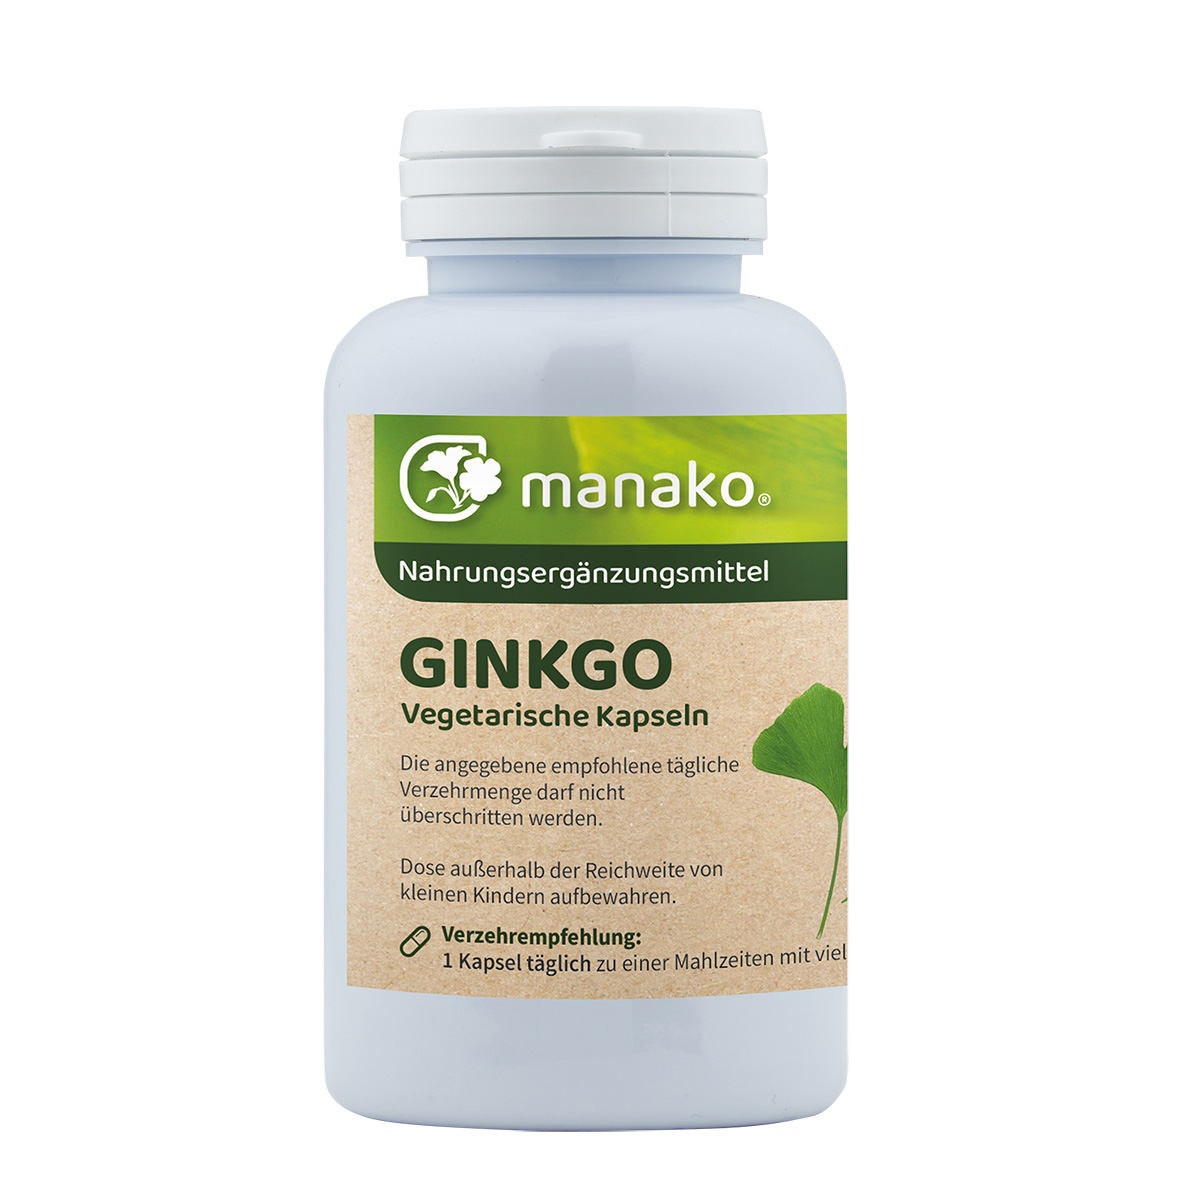 manako Ginkgo vegetarische Kapseln, 90 Stück, Dose a 30 g